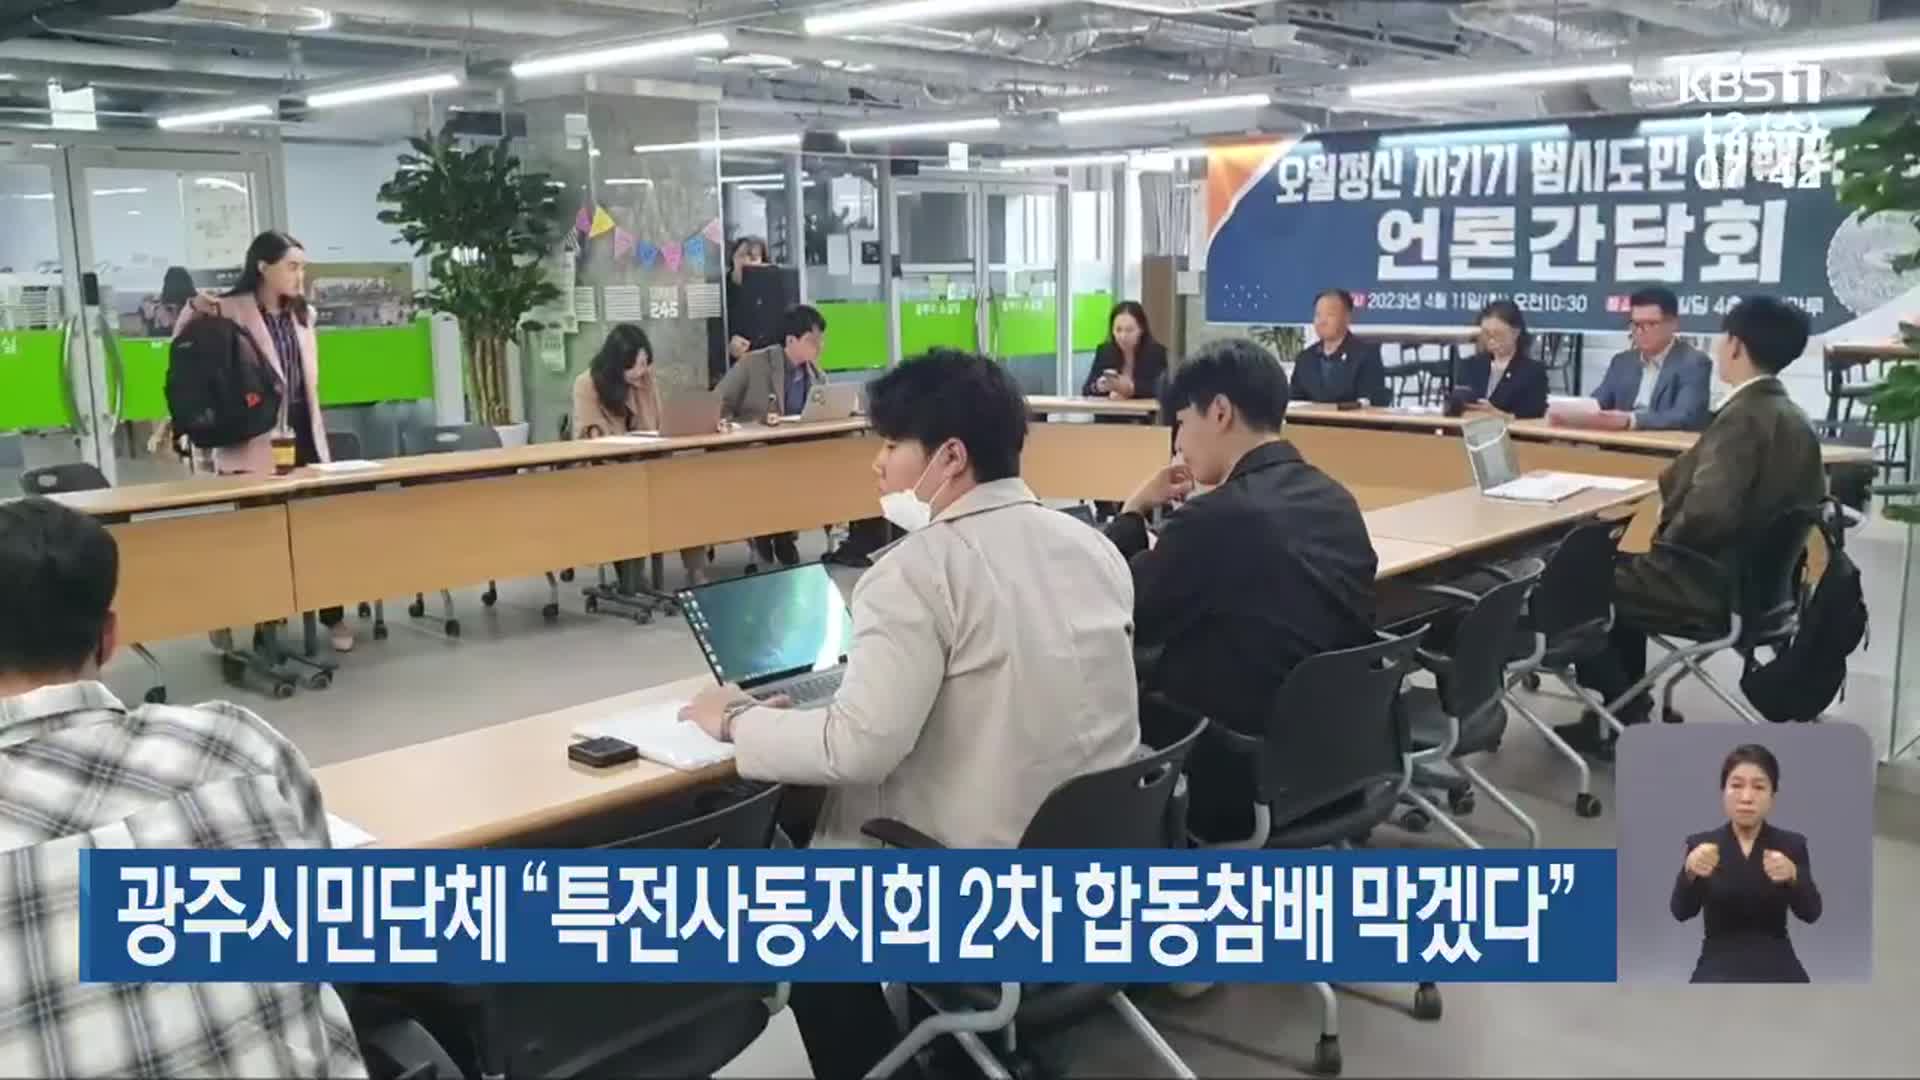 광주시민단체 “특전사동지회 2차 합동참배 막겠다”